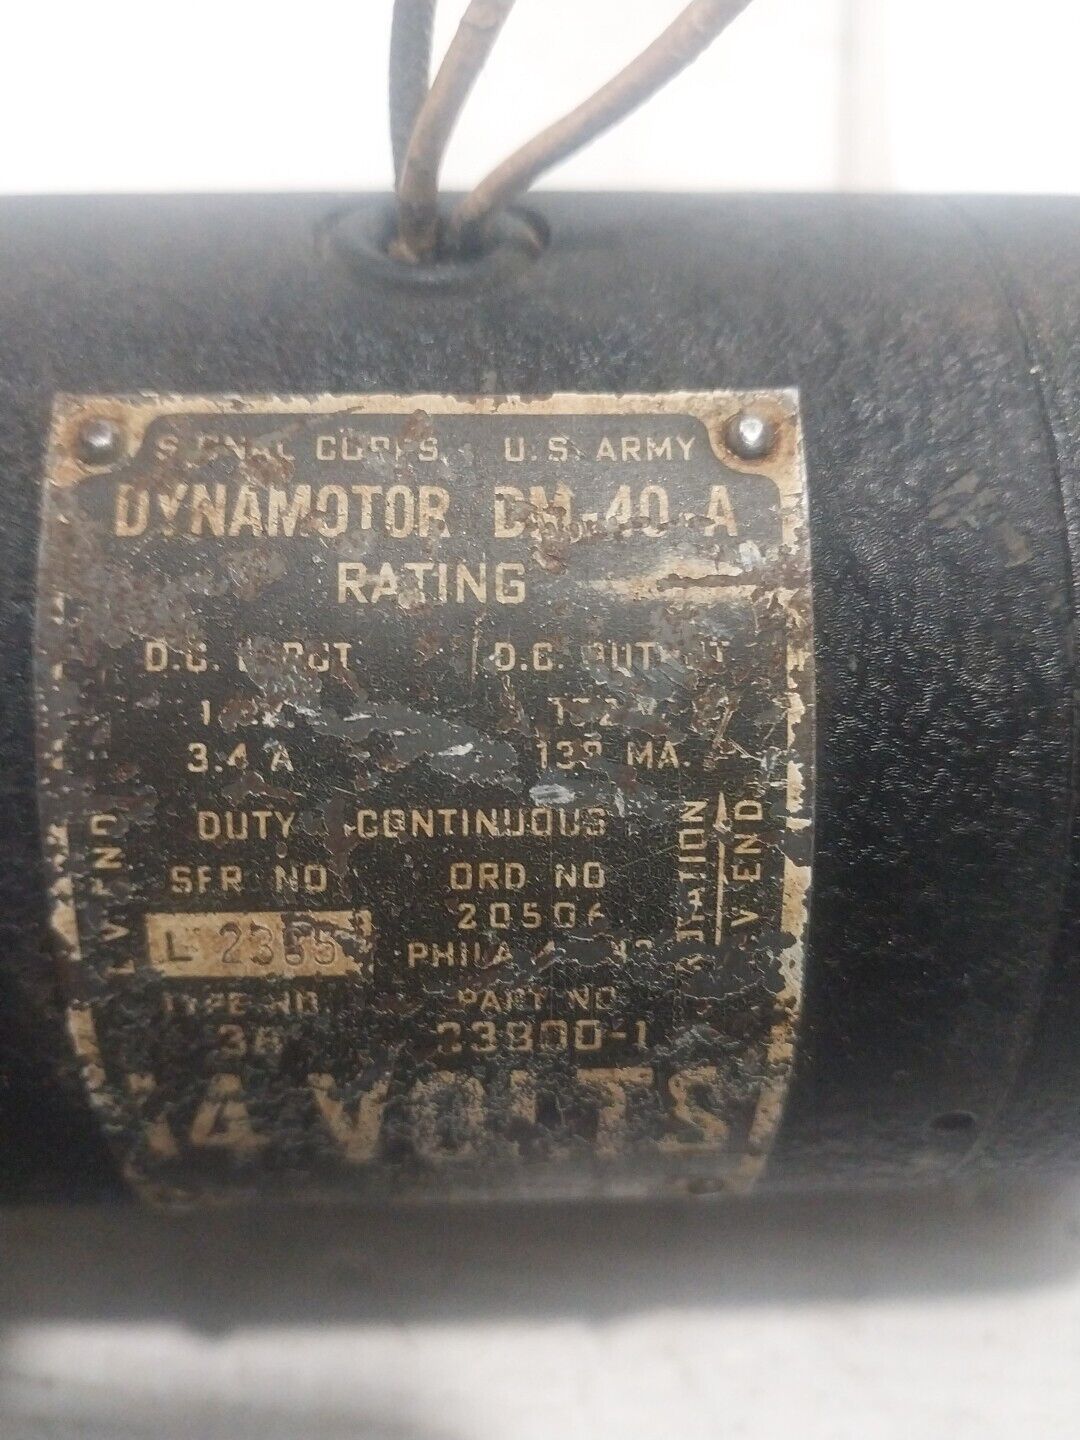 DM-40-A Dynamotor, Untested